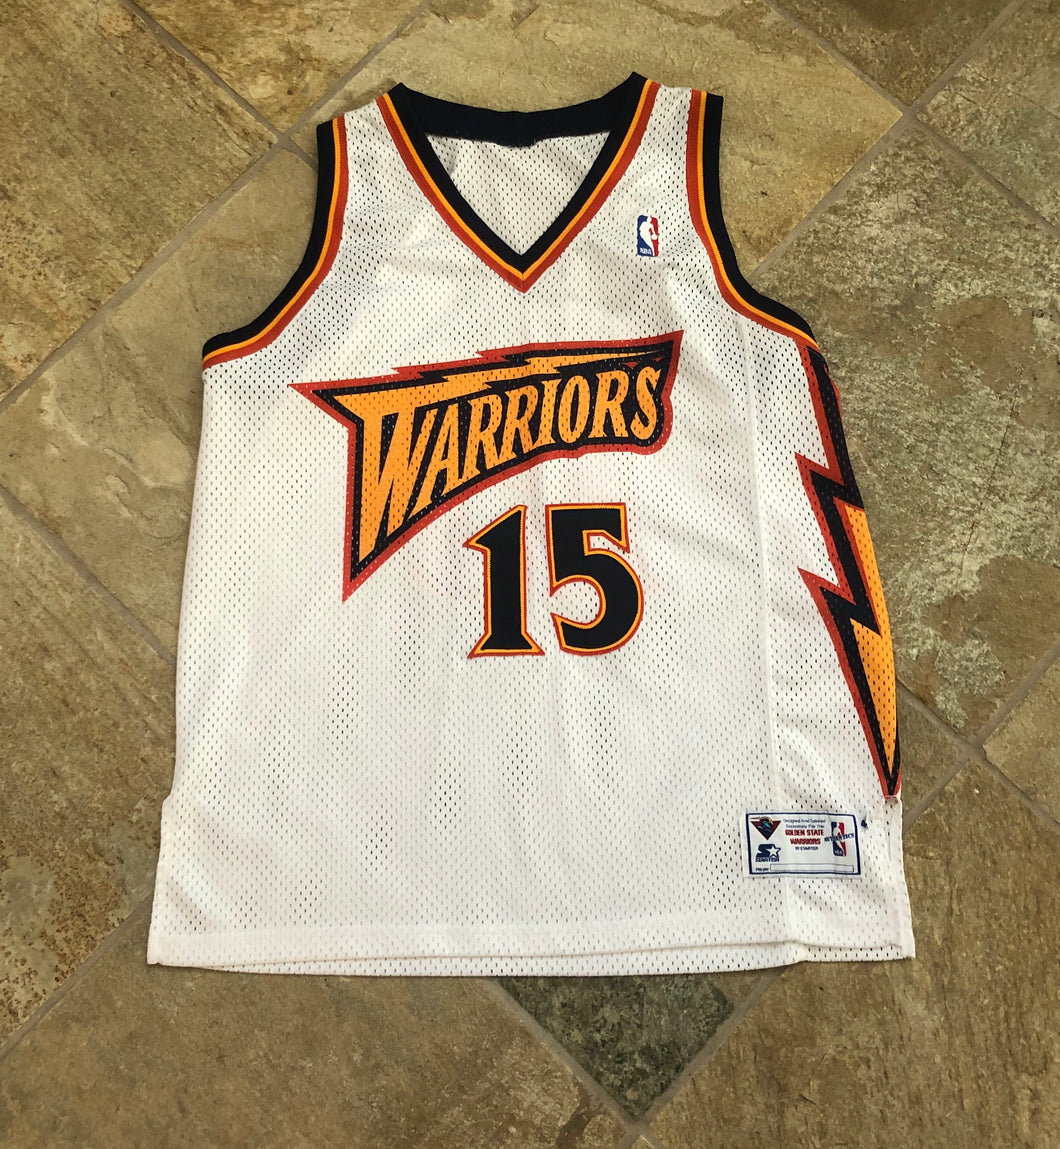 Latrell Sprewell: Golden State Warriors (1997 All Star jersey) #JerseyJax  #GetWithMe #CustomWork